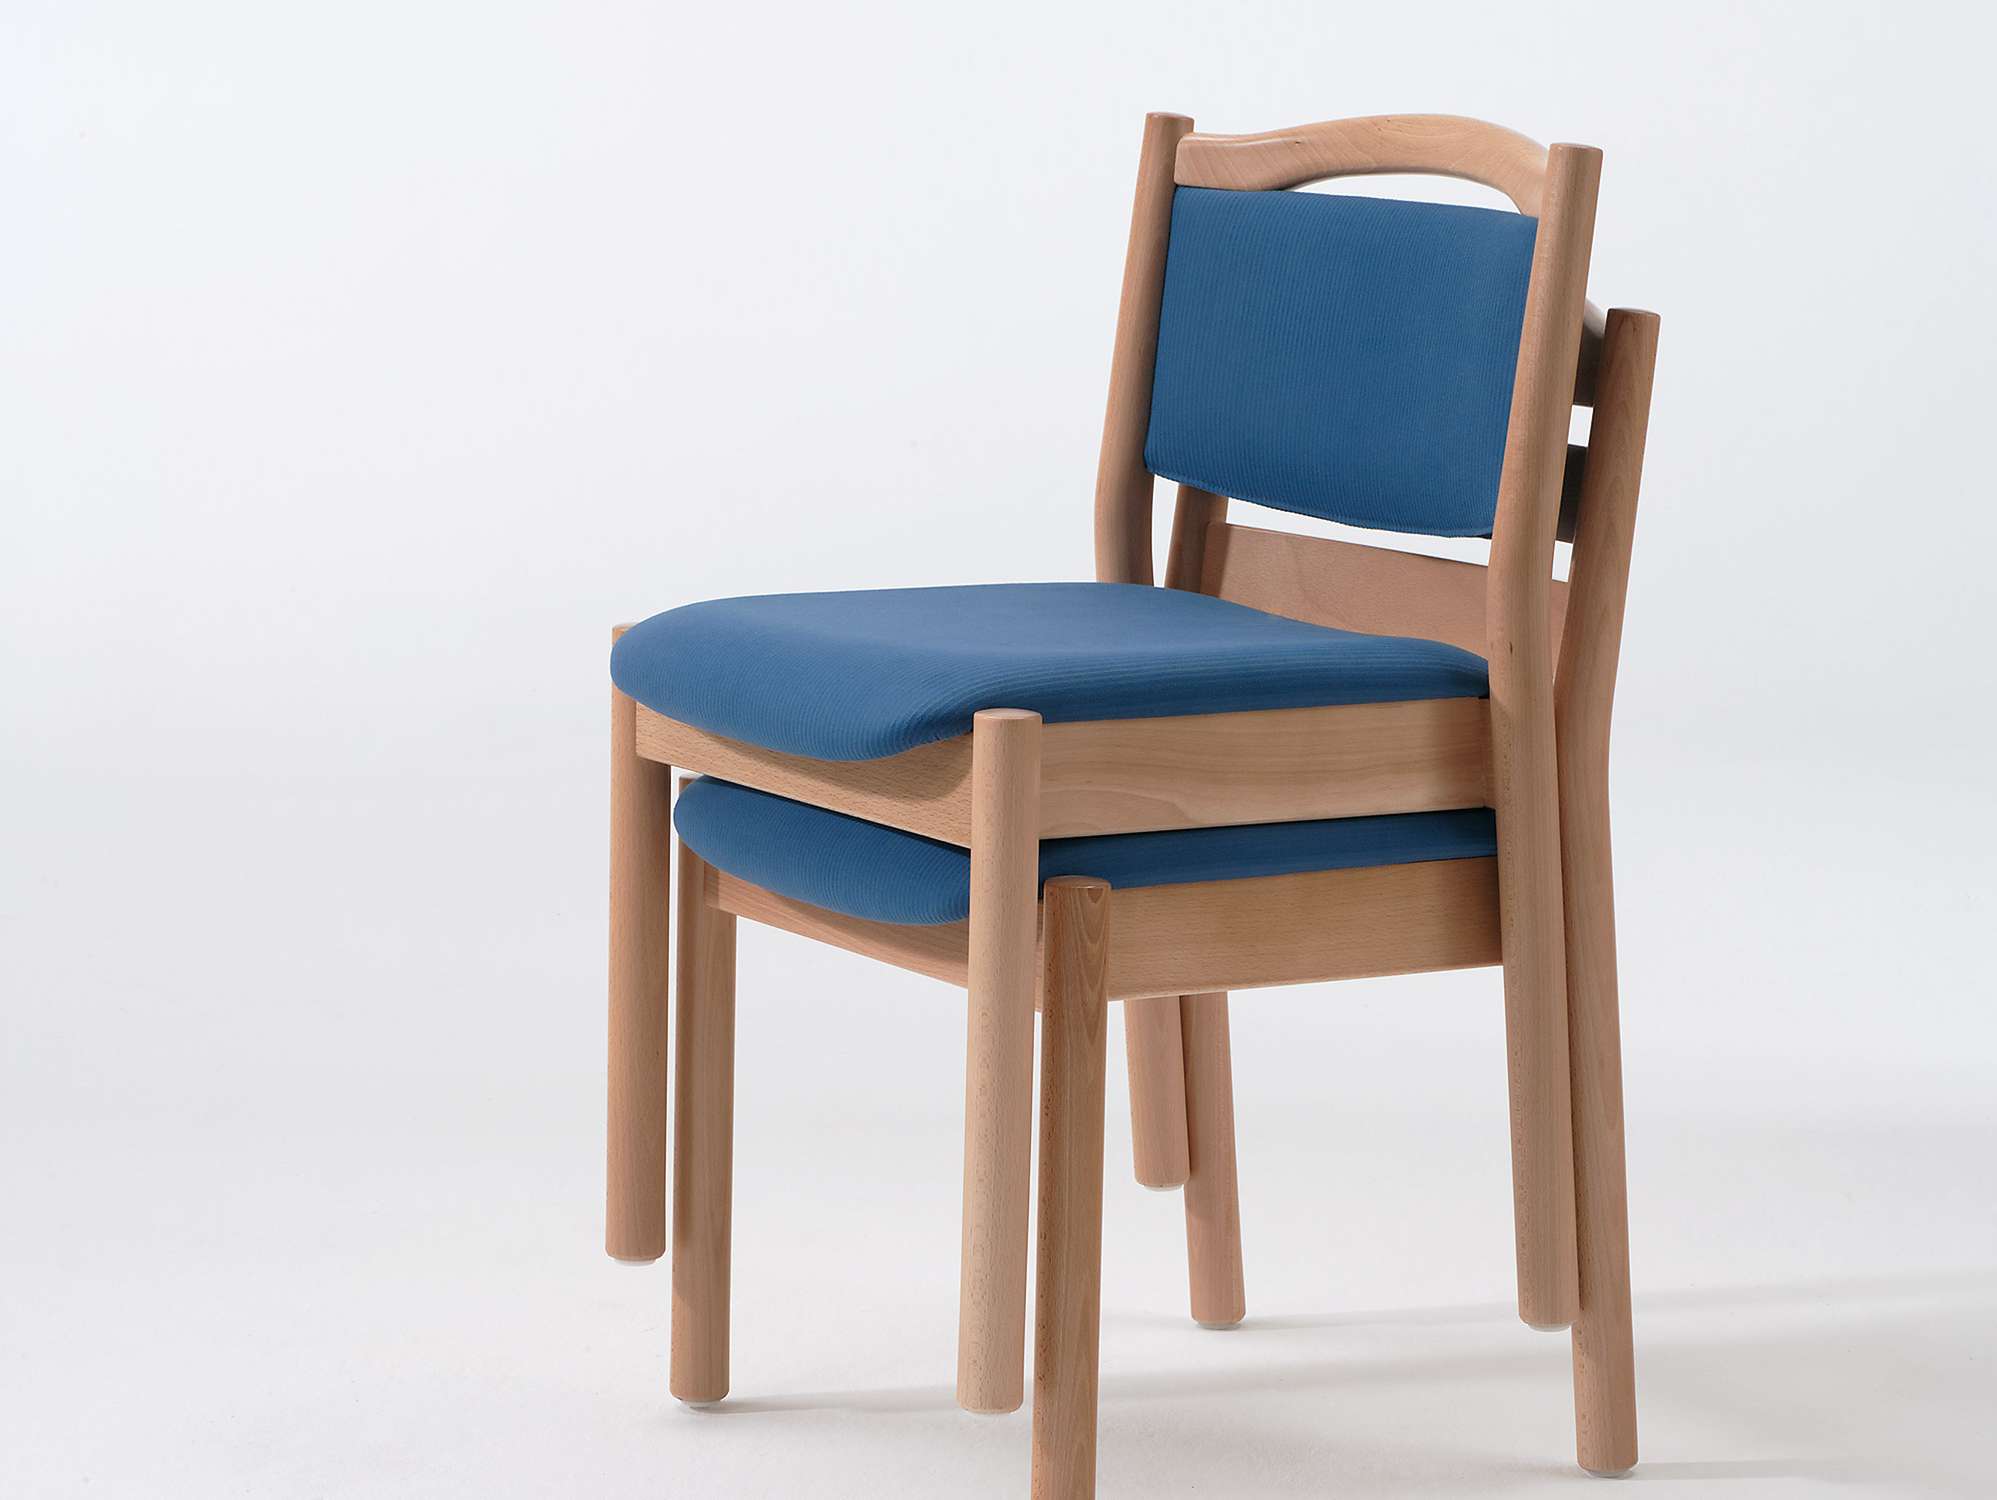 Stapelbare stoelen uit de meubelserie Primo